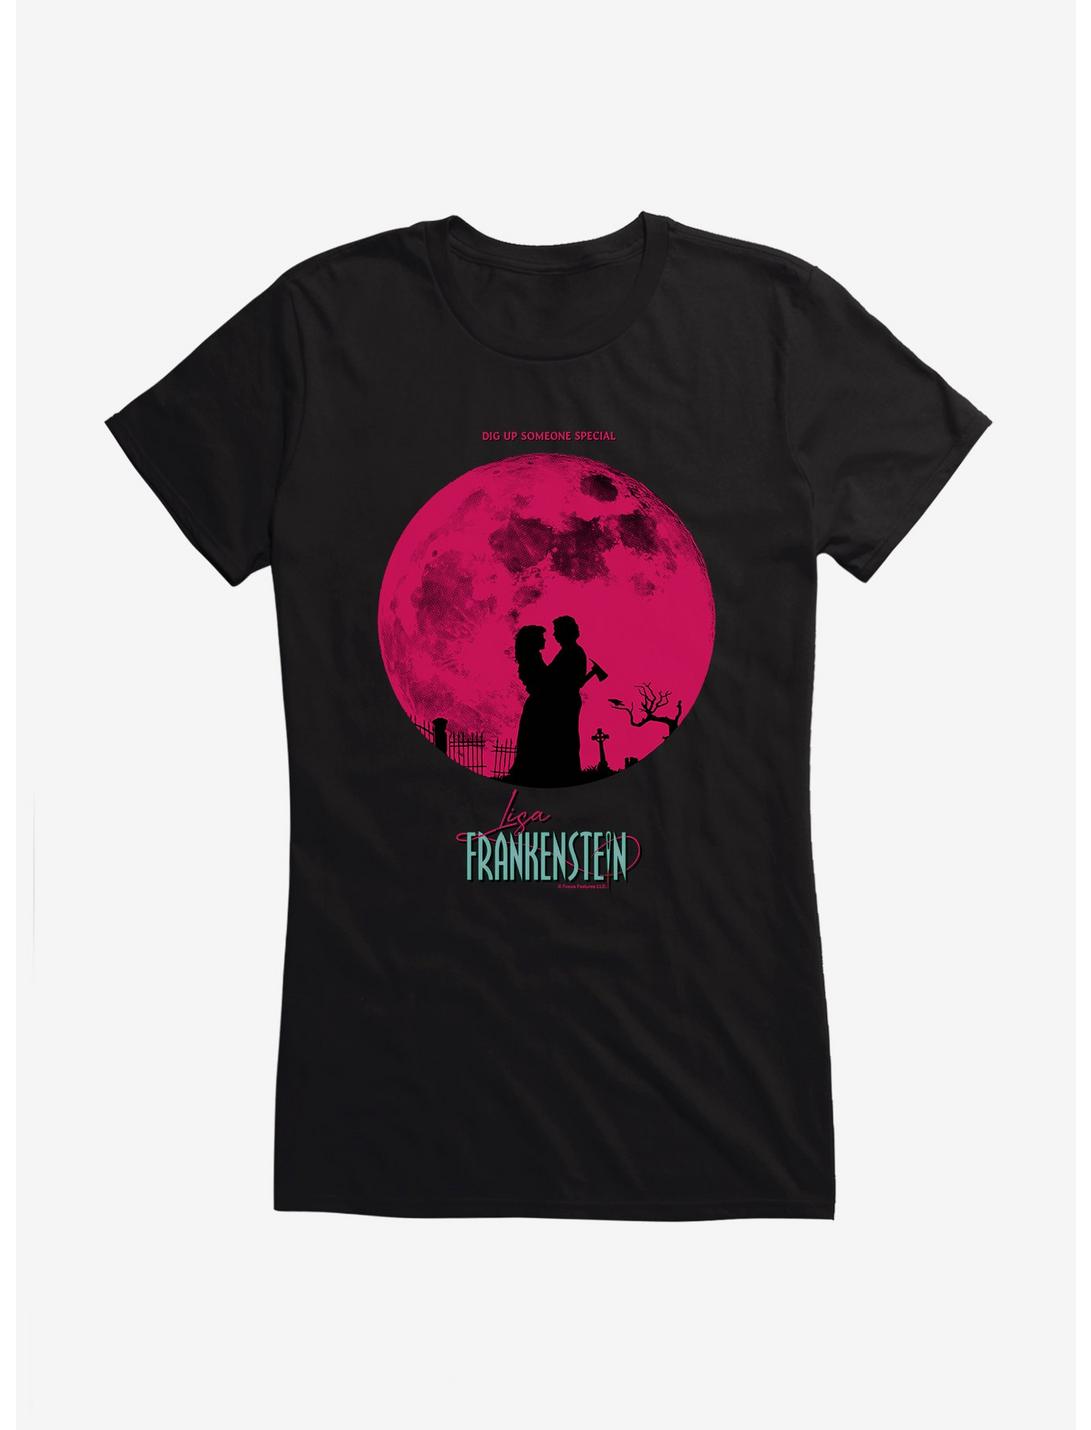 Lisa Frankenstein Moon Silhouette Girls T-Shirt, BLACK, hi-res